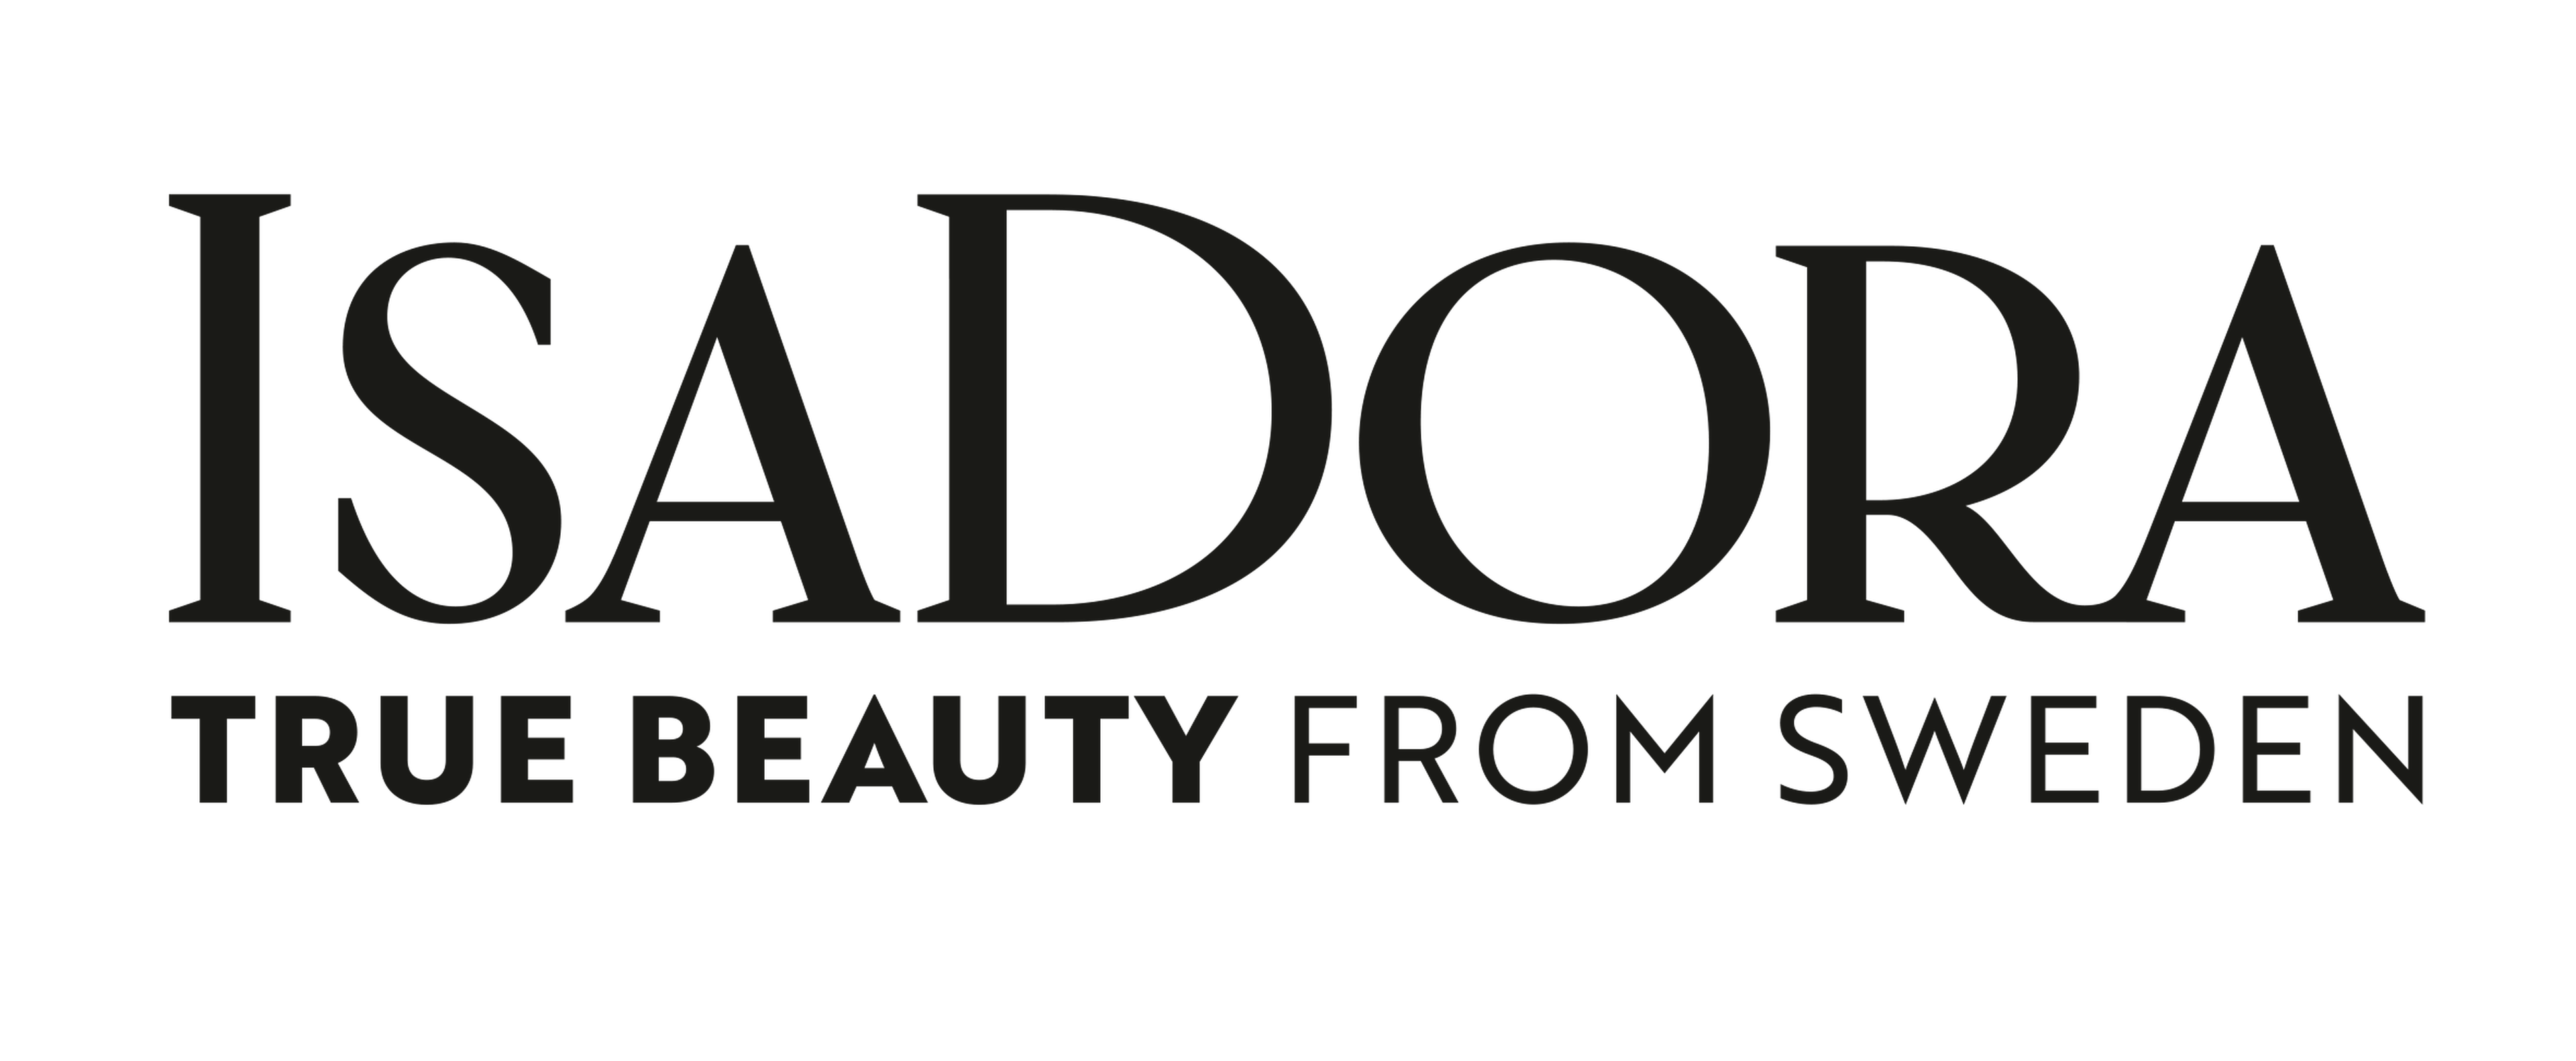 Isadora logotype